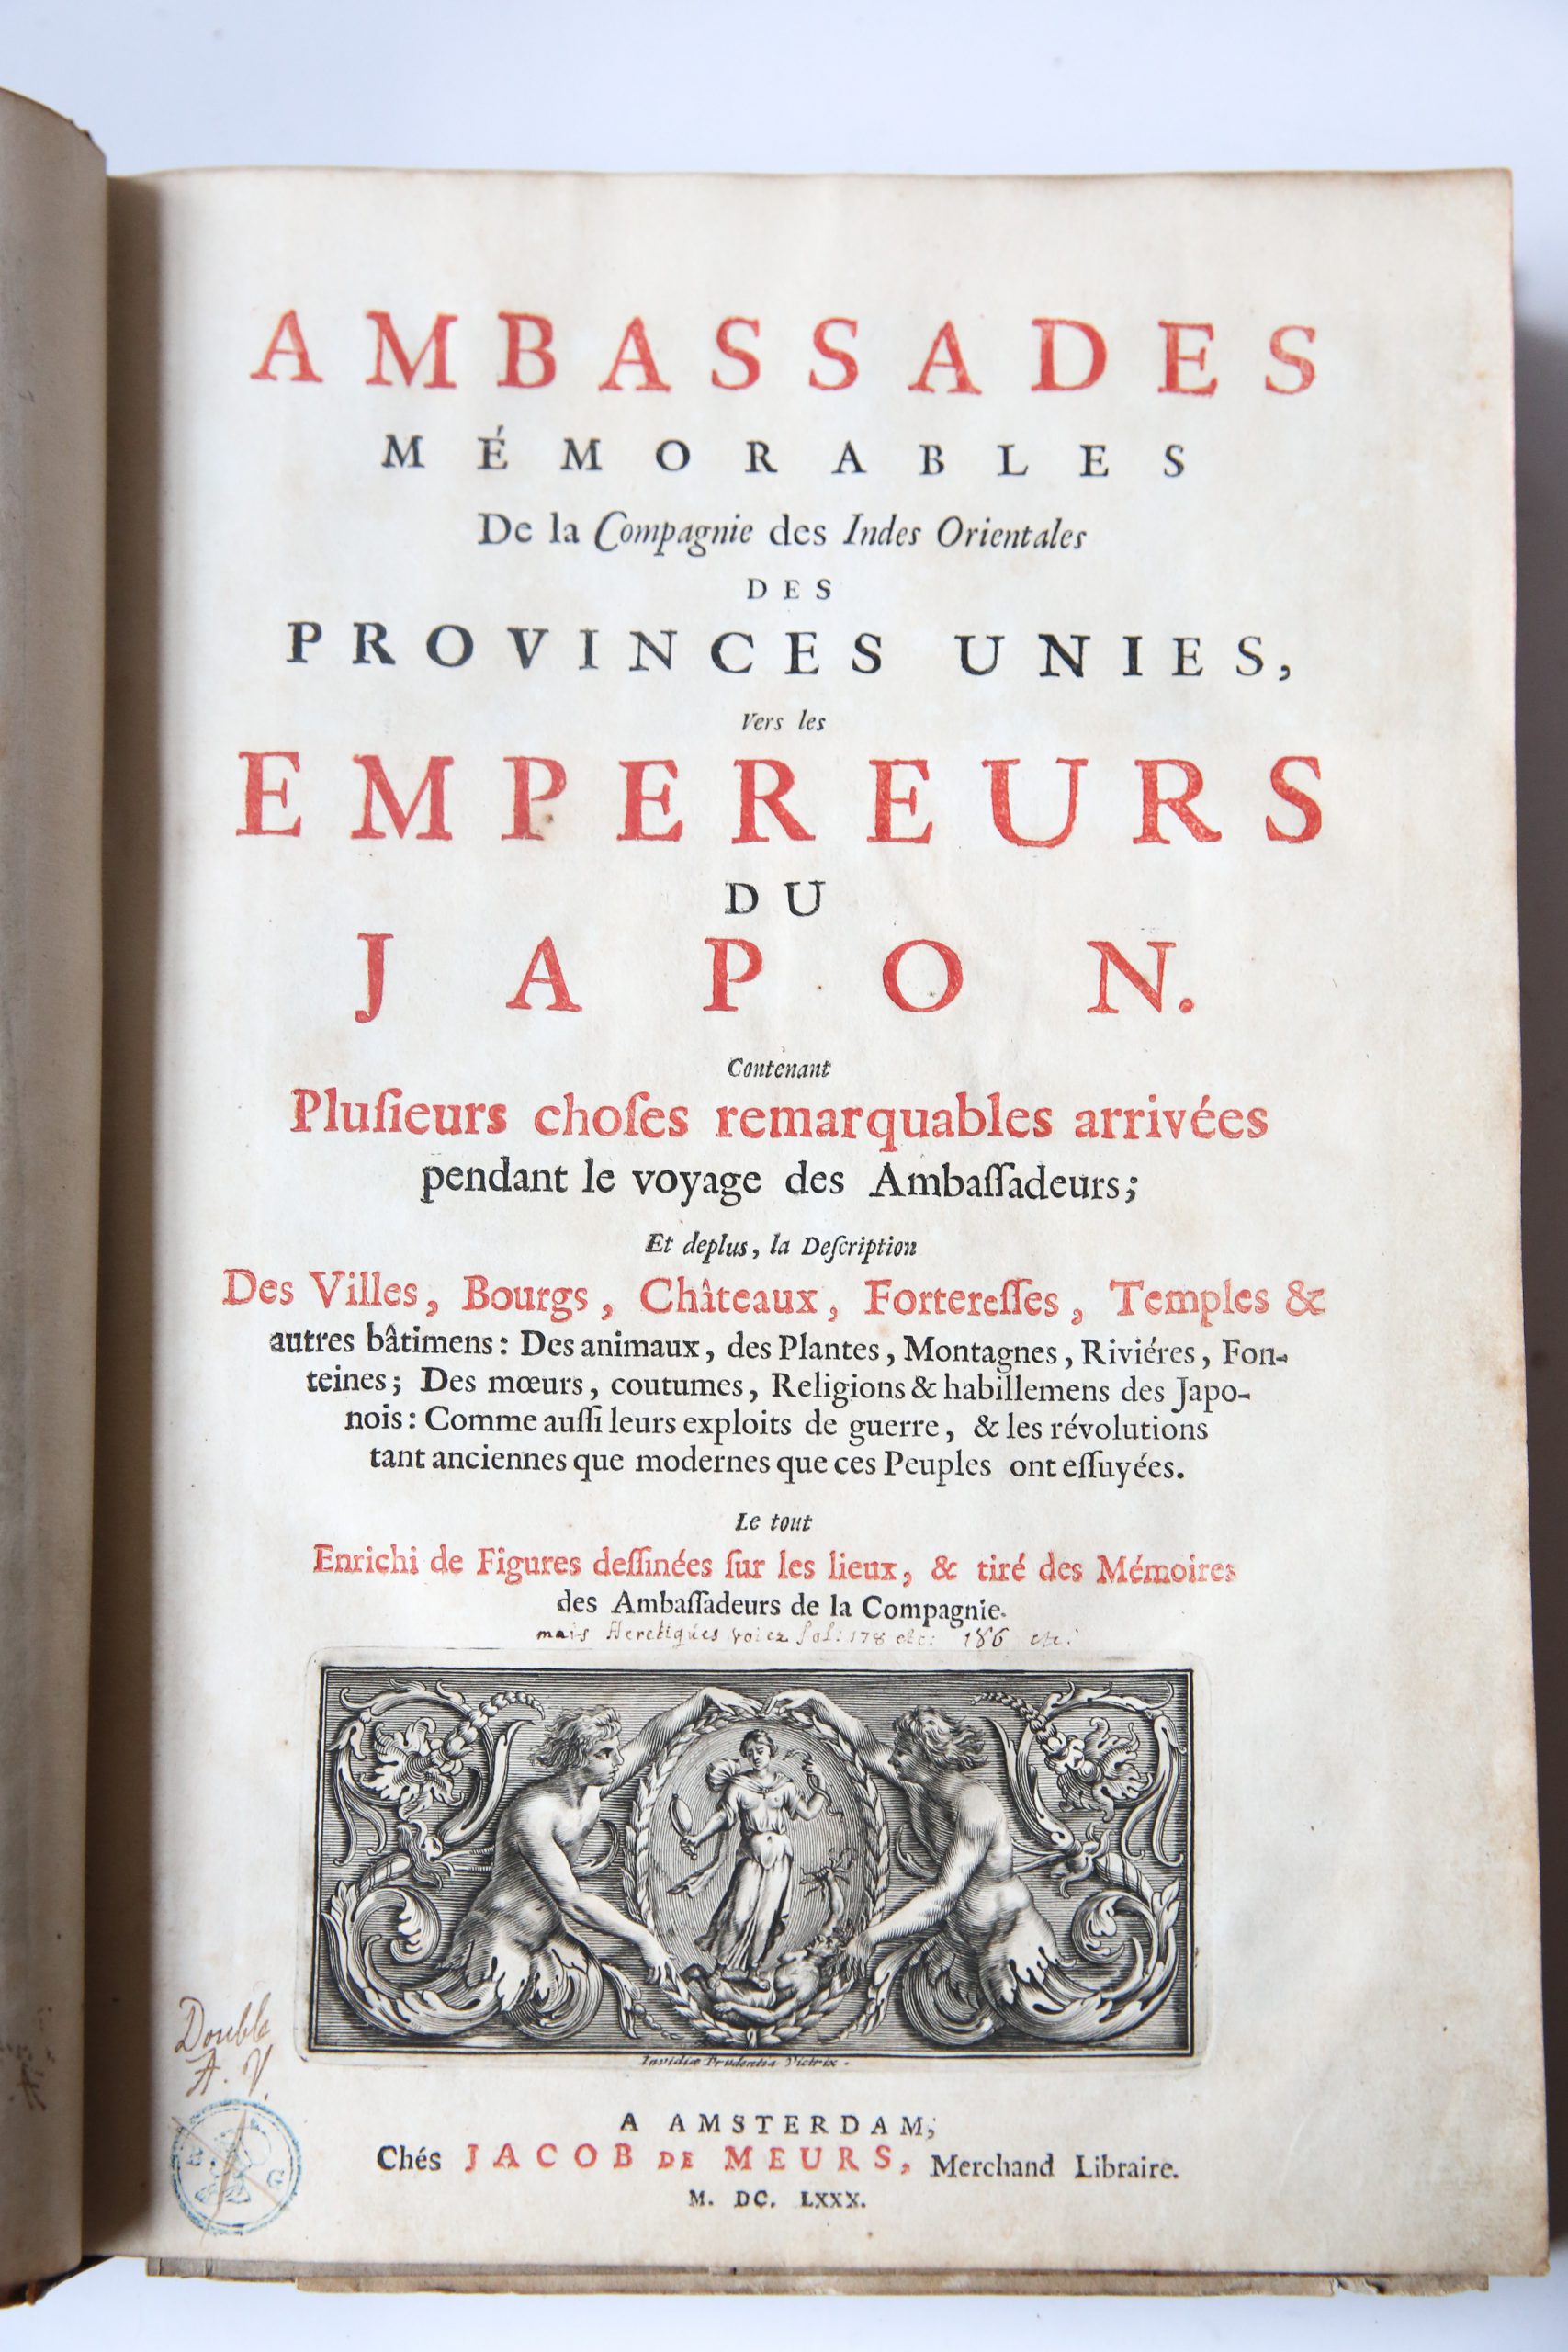 Ambassades memorables de la Compagnie des Indes Orientales des Provinces Unies, vers les empereurs du Japon. Amsterdam, J. v. Meurs, 1680.